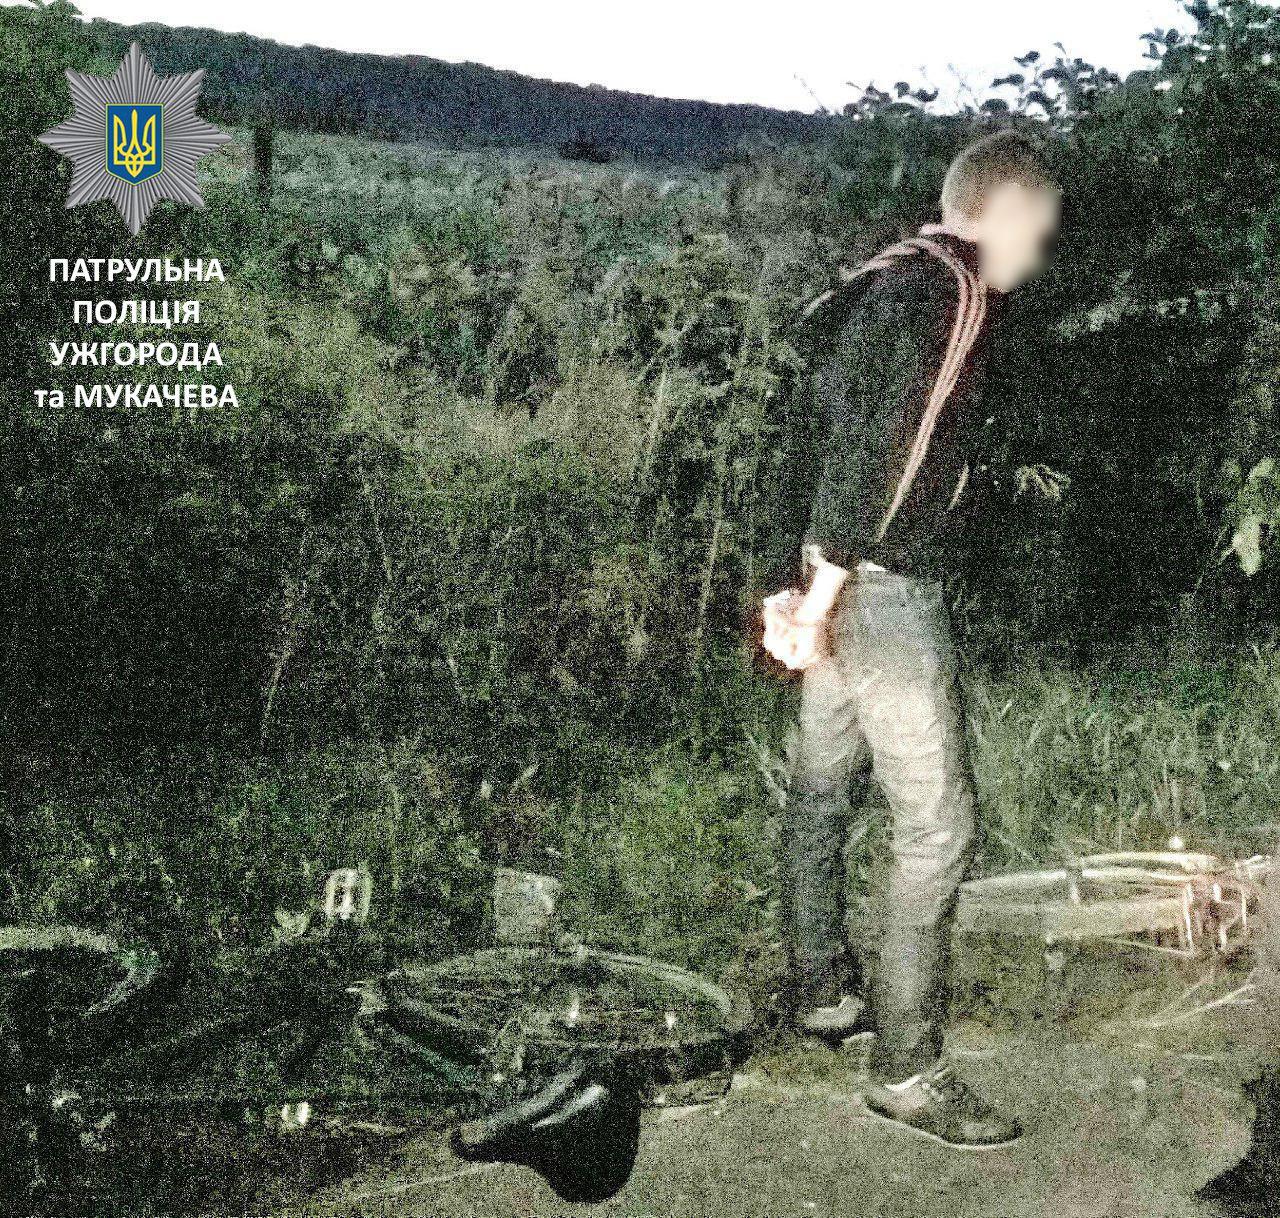 Чоловік, що о 5-ій ранку в Мукачеві видавав жіночий велосипед за власний, хотів утекти від пояснень (ФОТО)